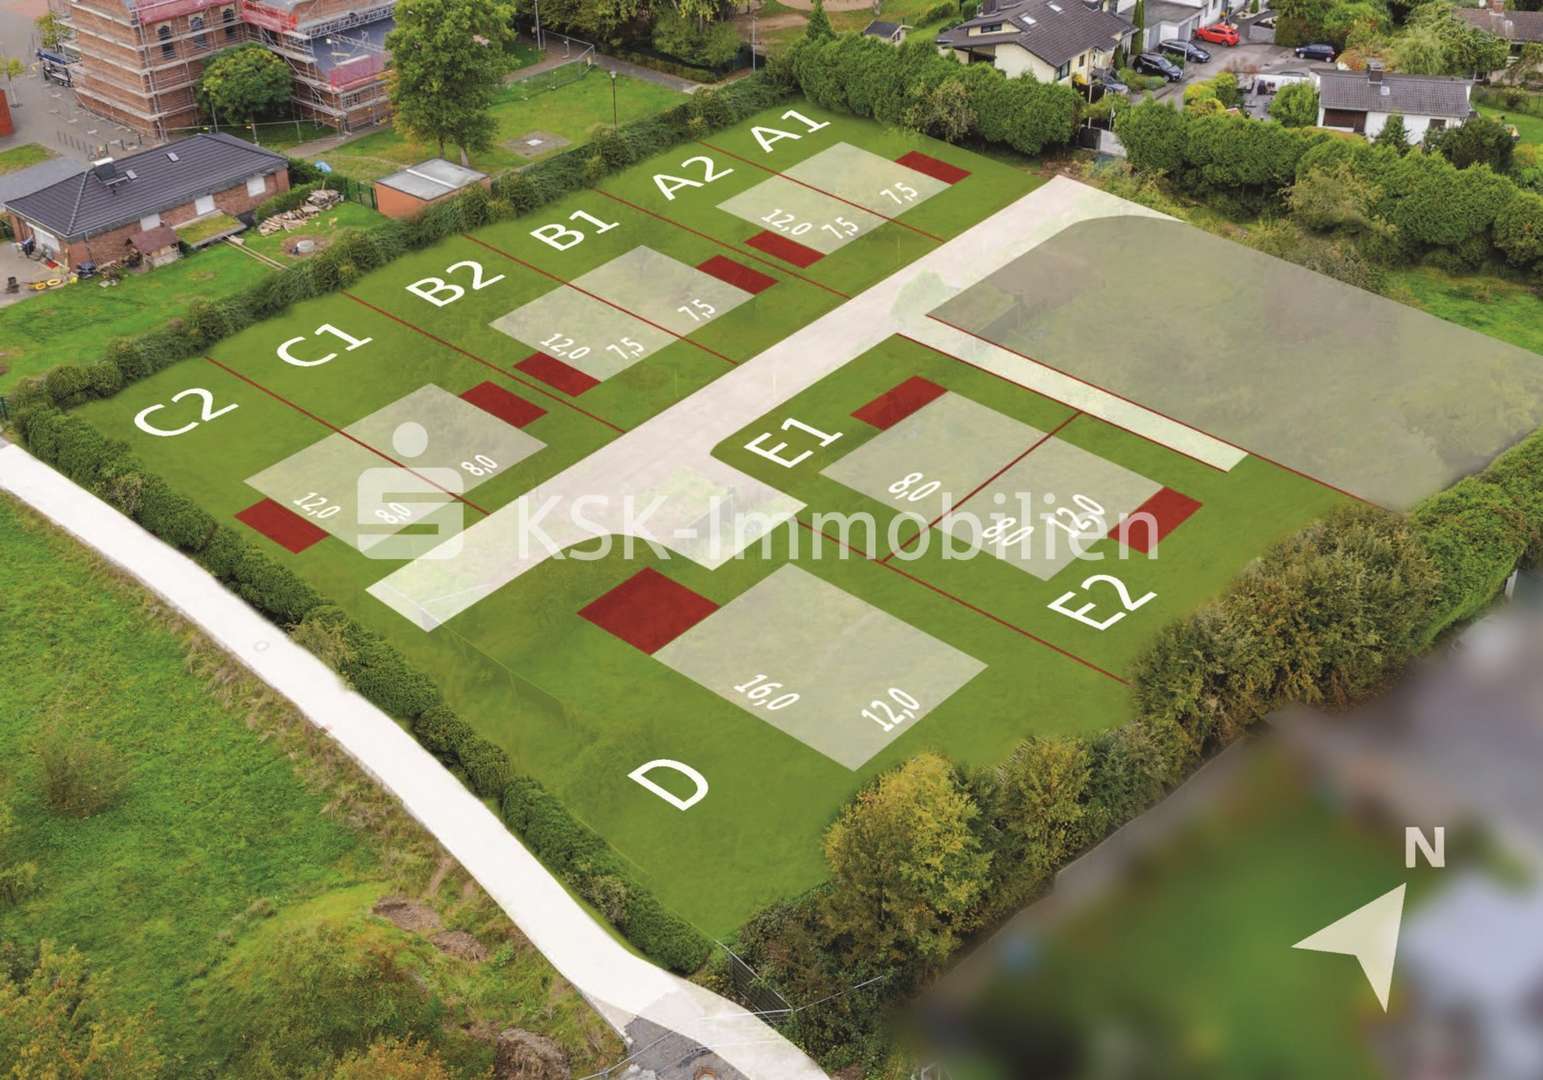 100165 Grundstücksübersicht - Grundstück in 51427 Bergisch Gladbach / Refrath mit 477m² kaufen